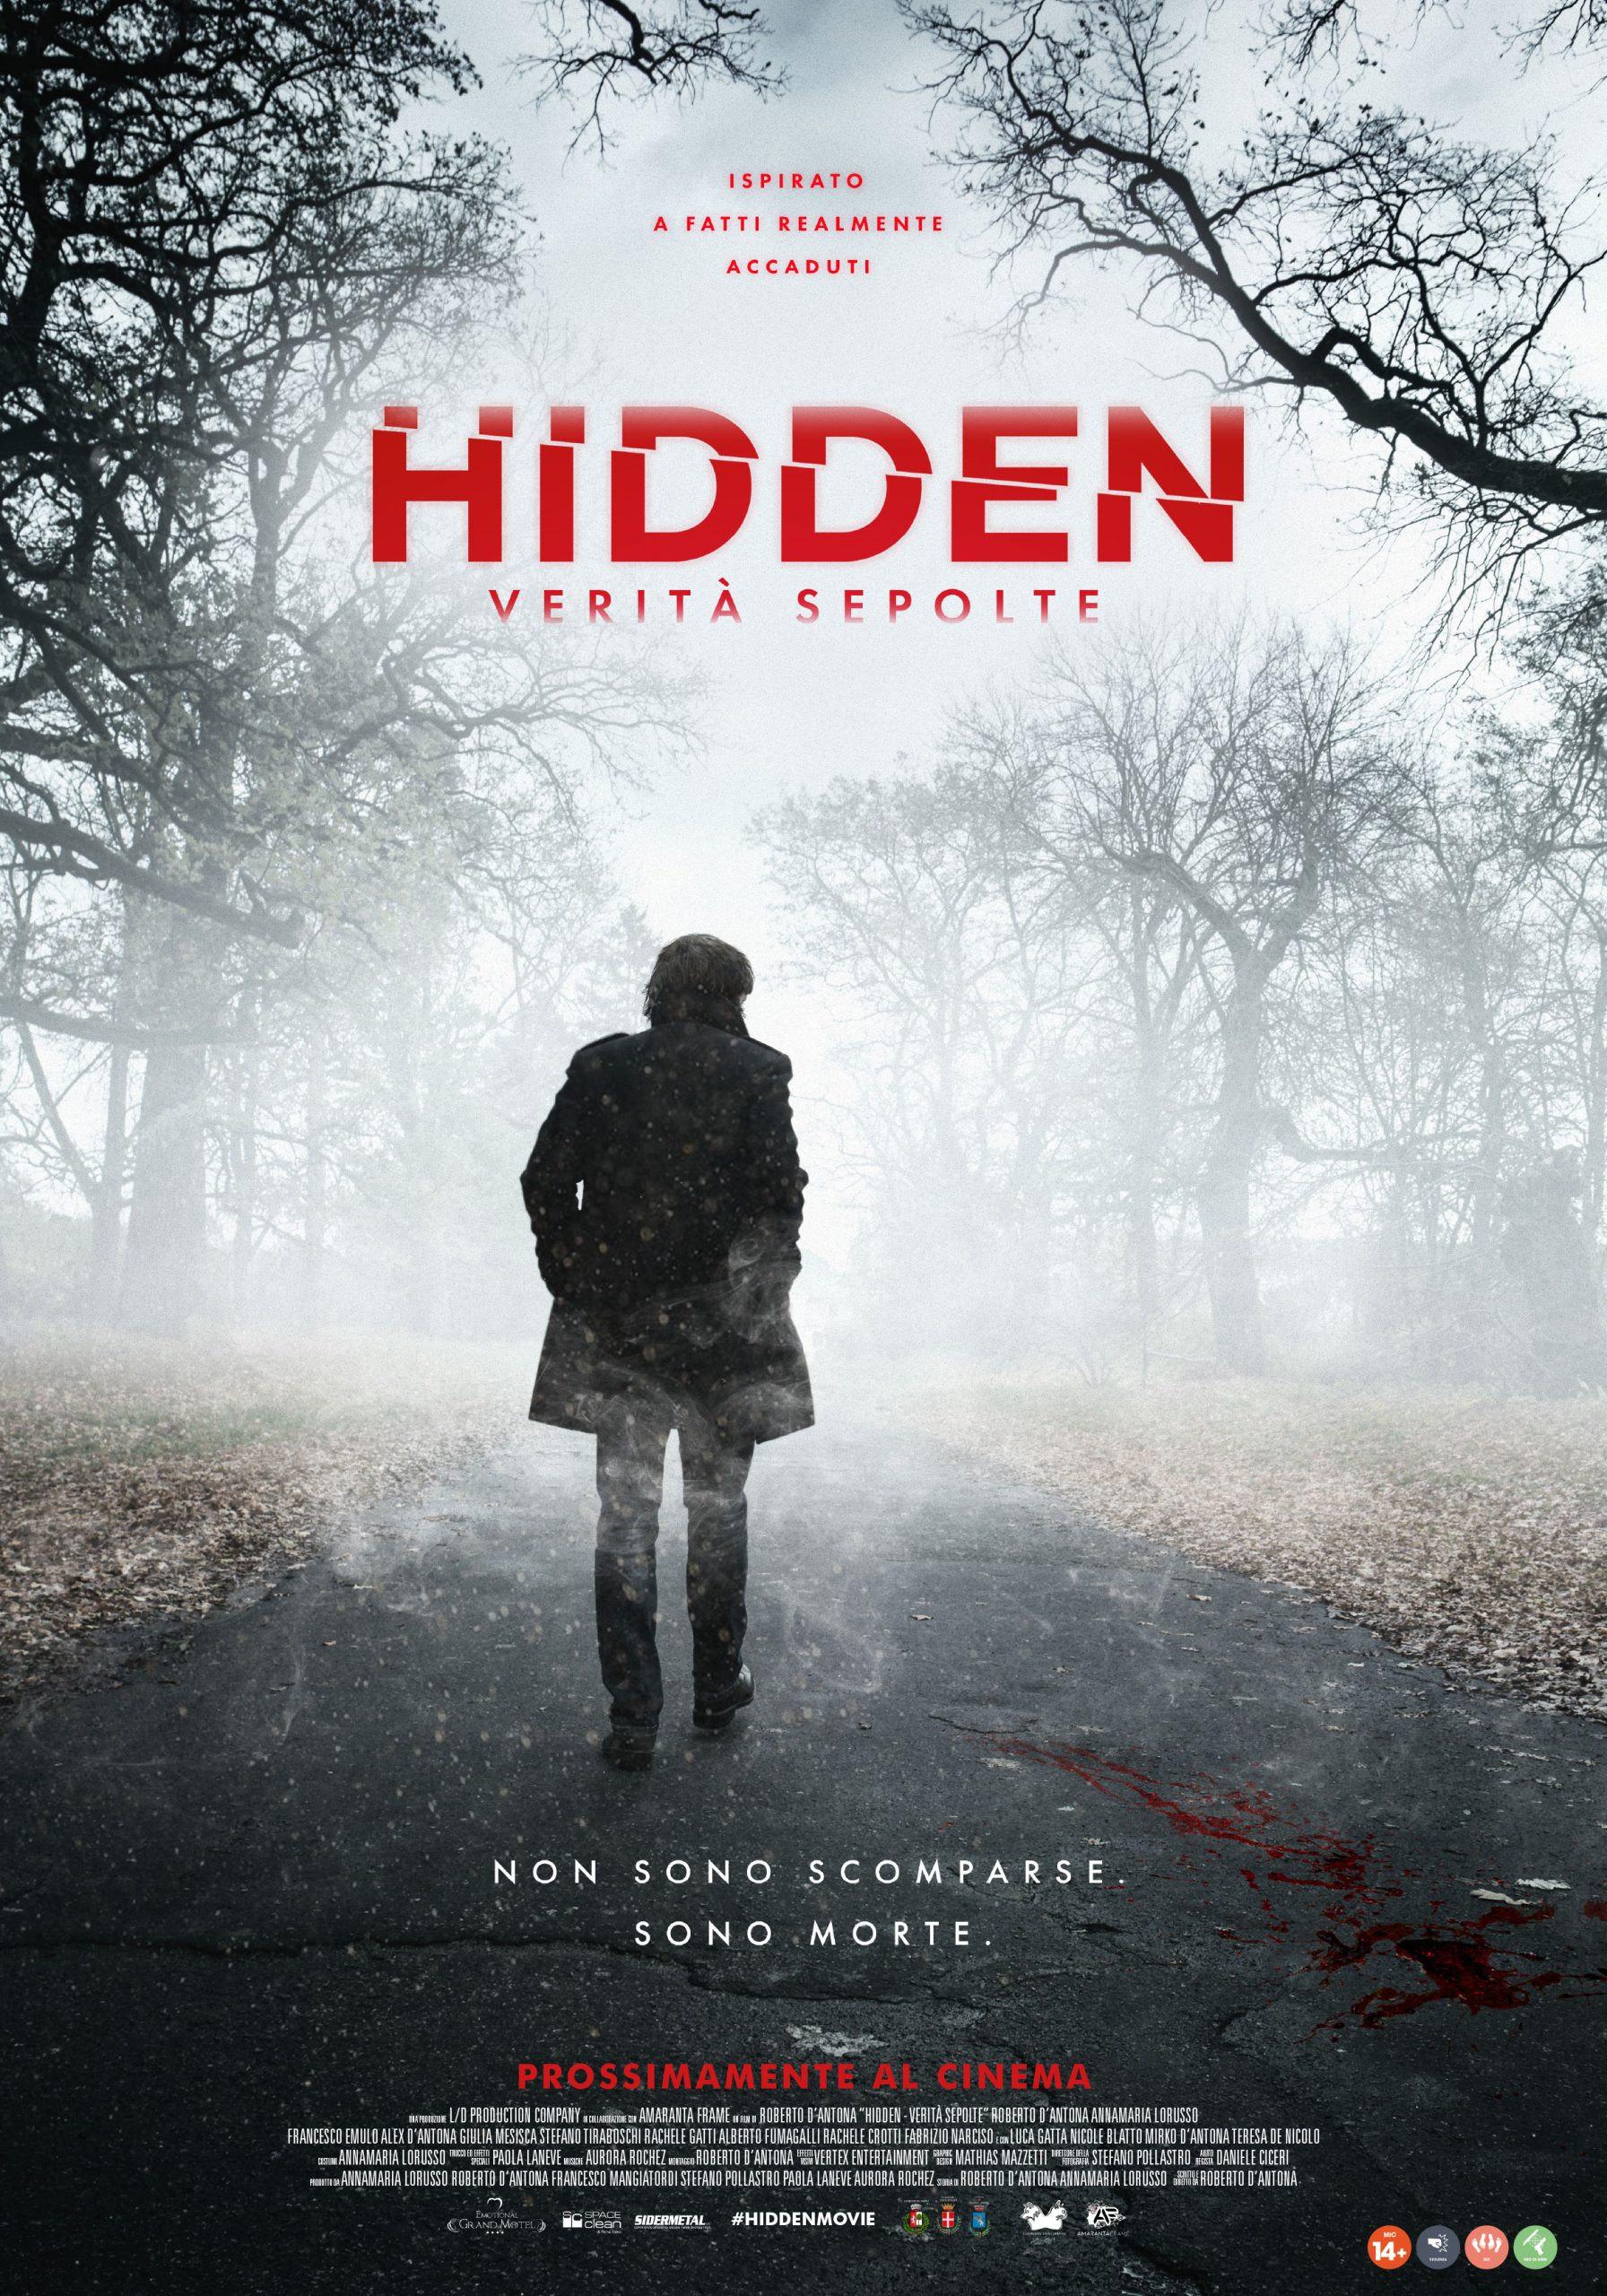 [NEWS] Trailer e locandina di Hidden: Verità Sepolte di Roberto D’Antona